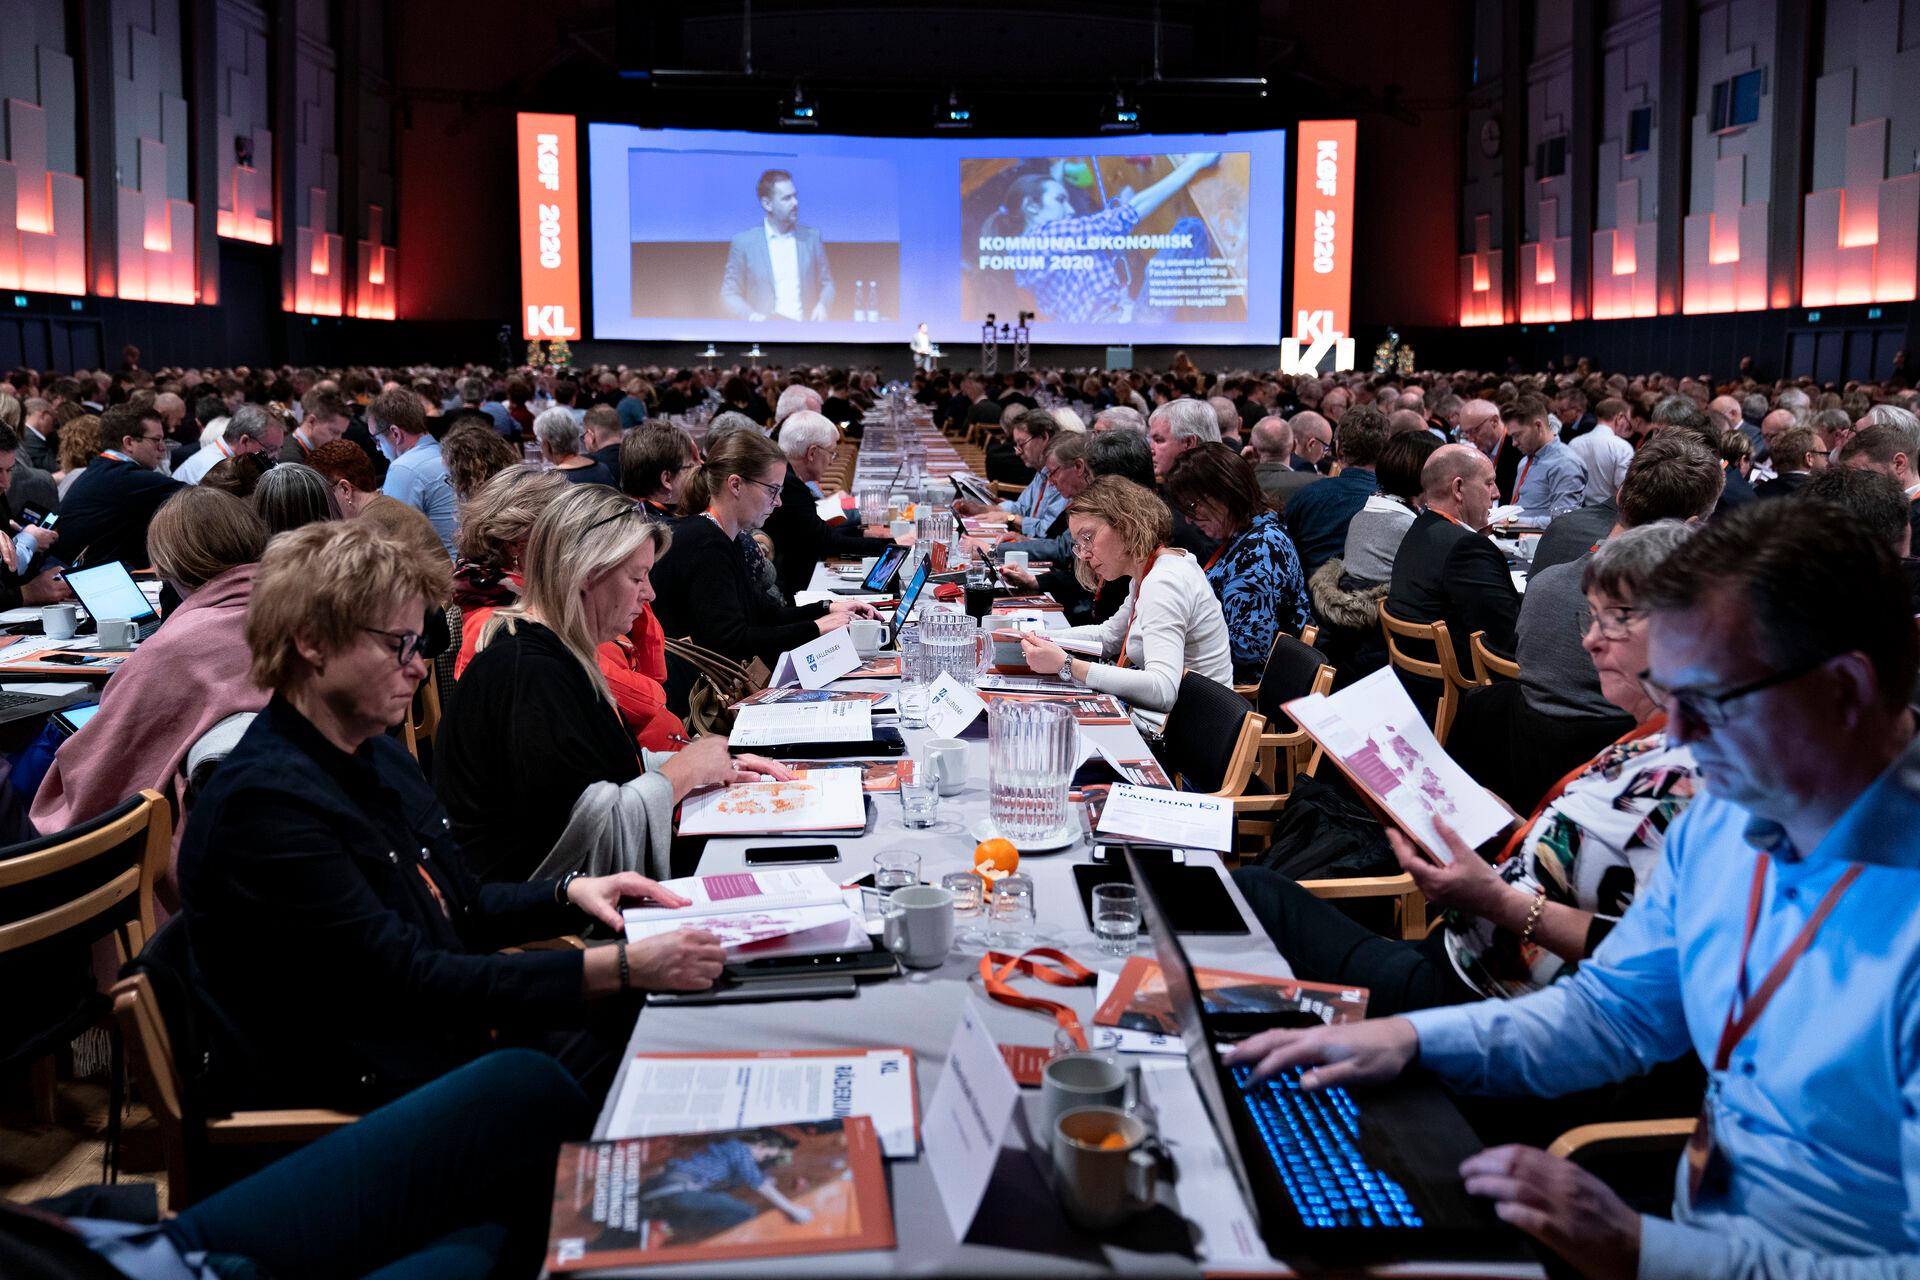  1500 borgmestre og kommunale topfolk mødes torsdag og fredag i Aalborg. Ældreområdet og manglen på hænder er et altoverskyggende tema på Kommunaløkonomisk Forum. 